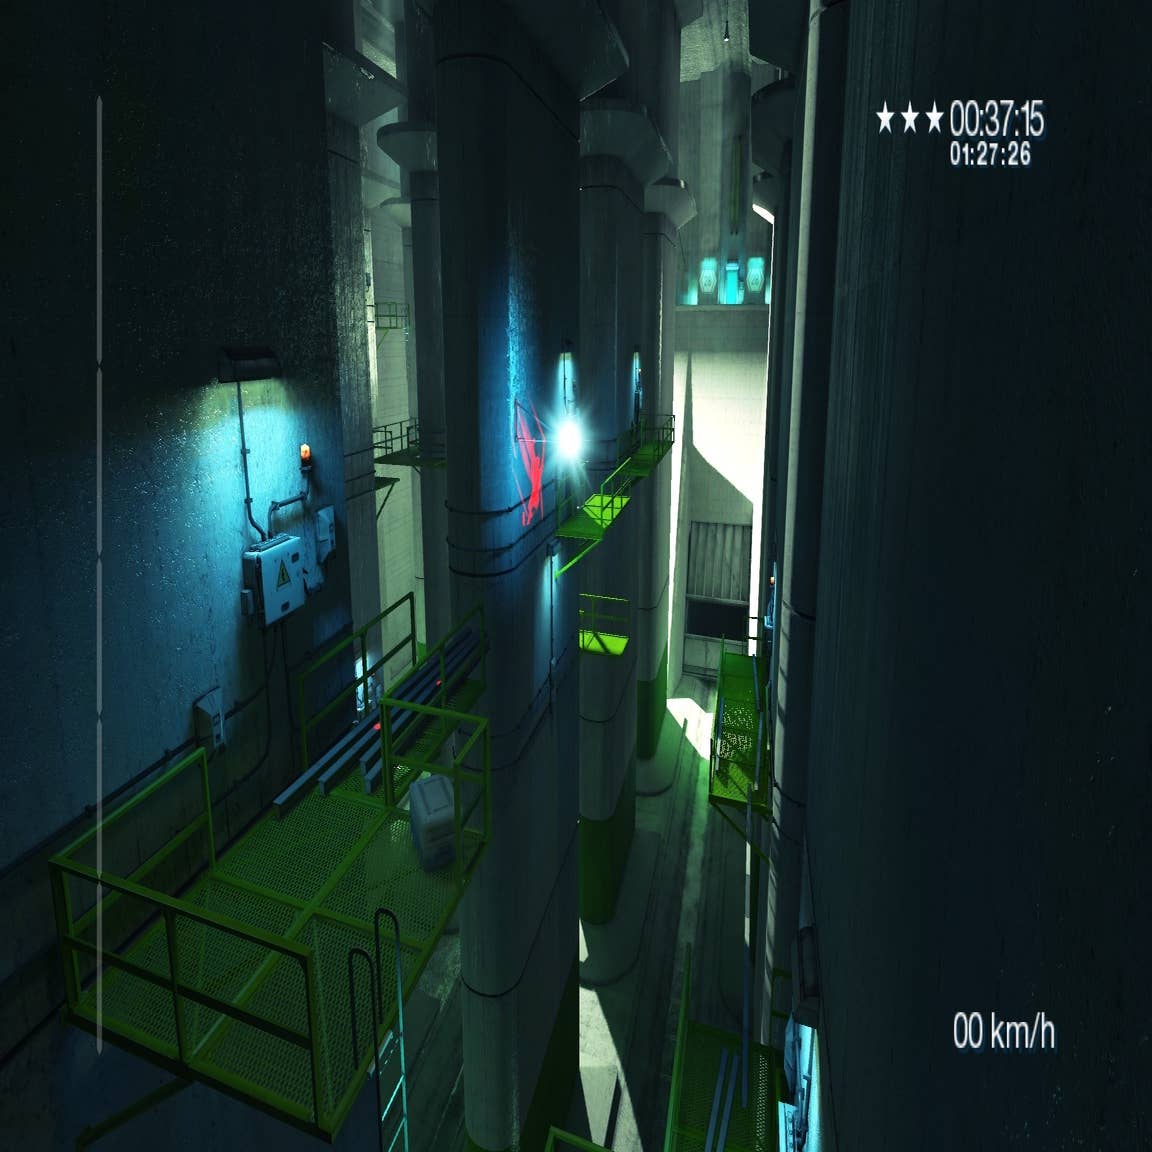 Mirror's Edge: veja dicas de como jogar o game de ação e aventura